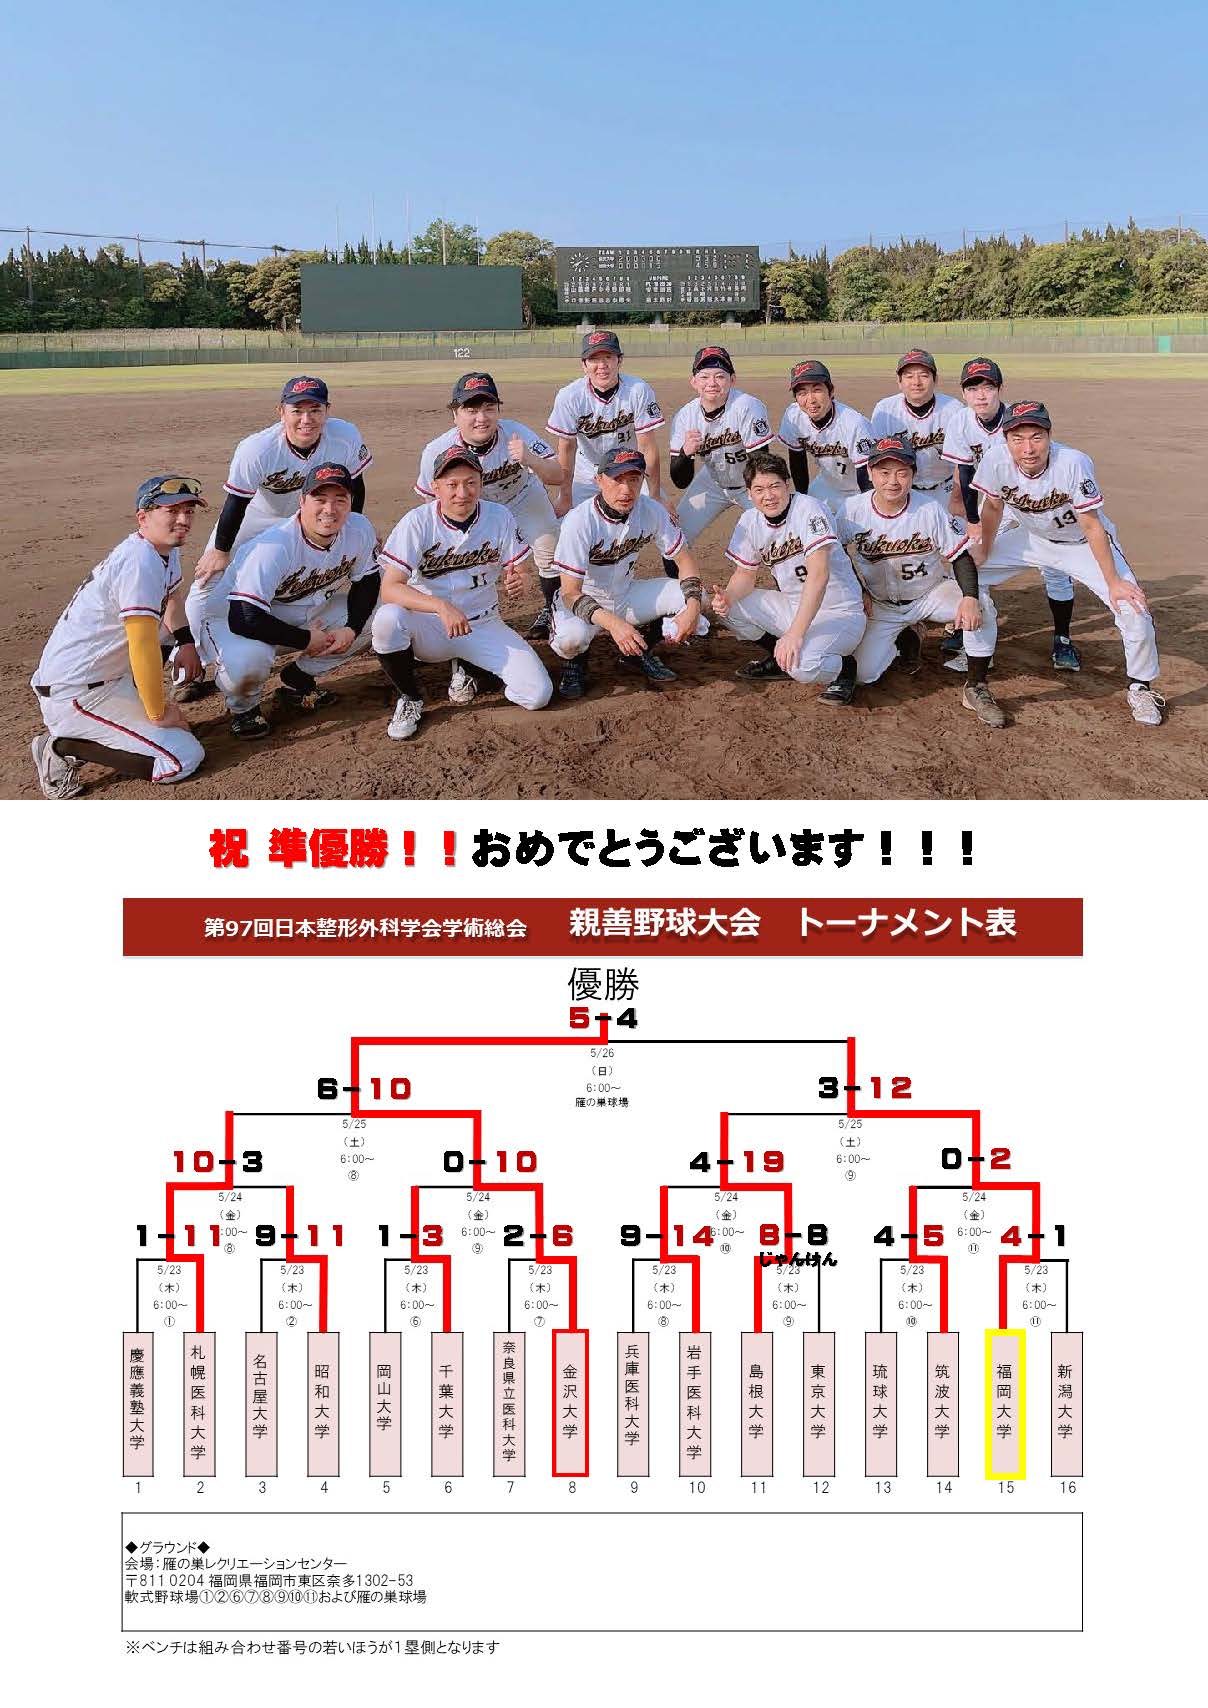 第97回日本整形外科学会親善野球大会にて、福岡大学が準優勝しました！